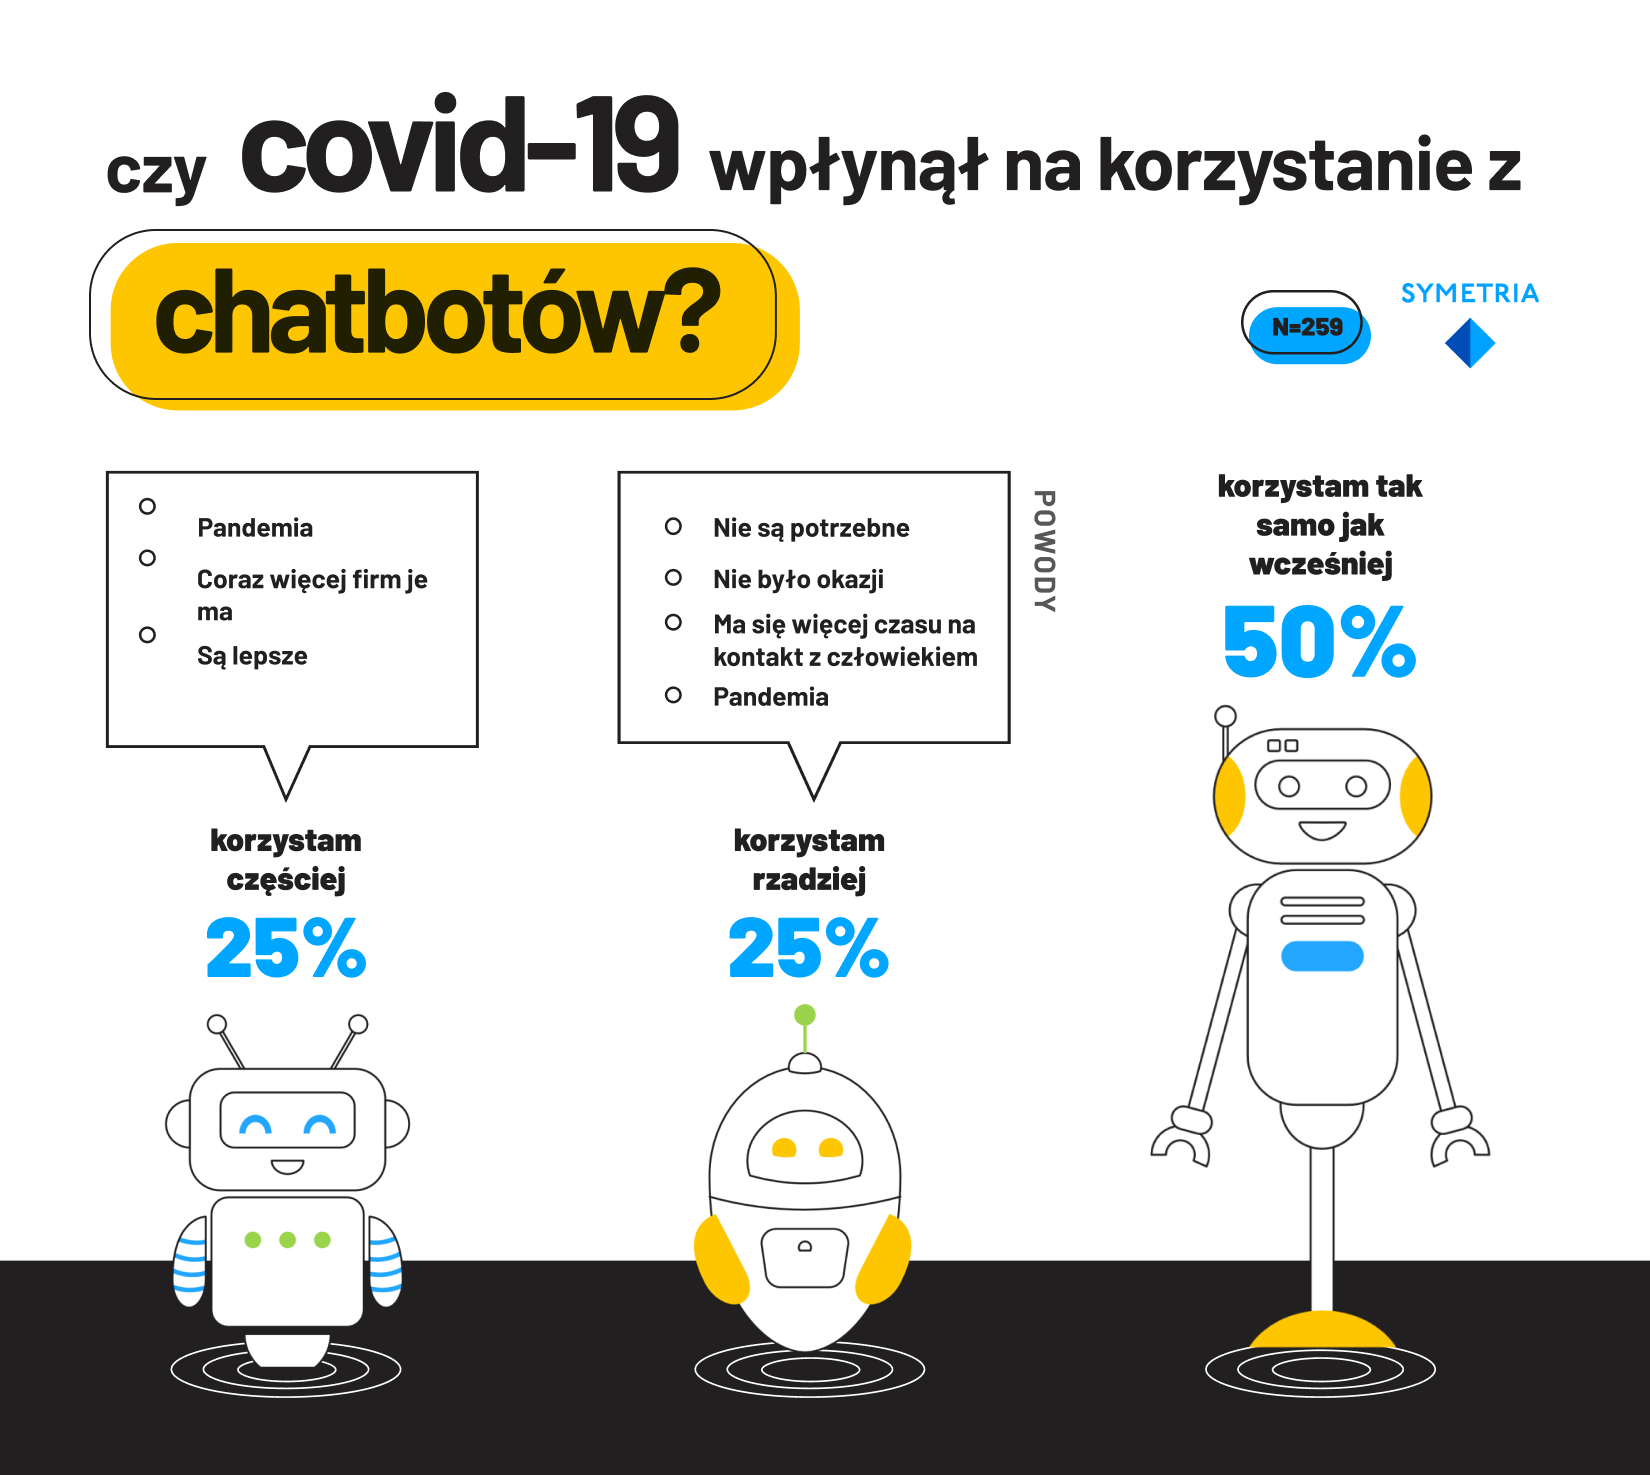 Czy COVID-19 wpłynął na korzystanie z chatbotów w Polsce (2020)